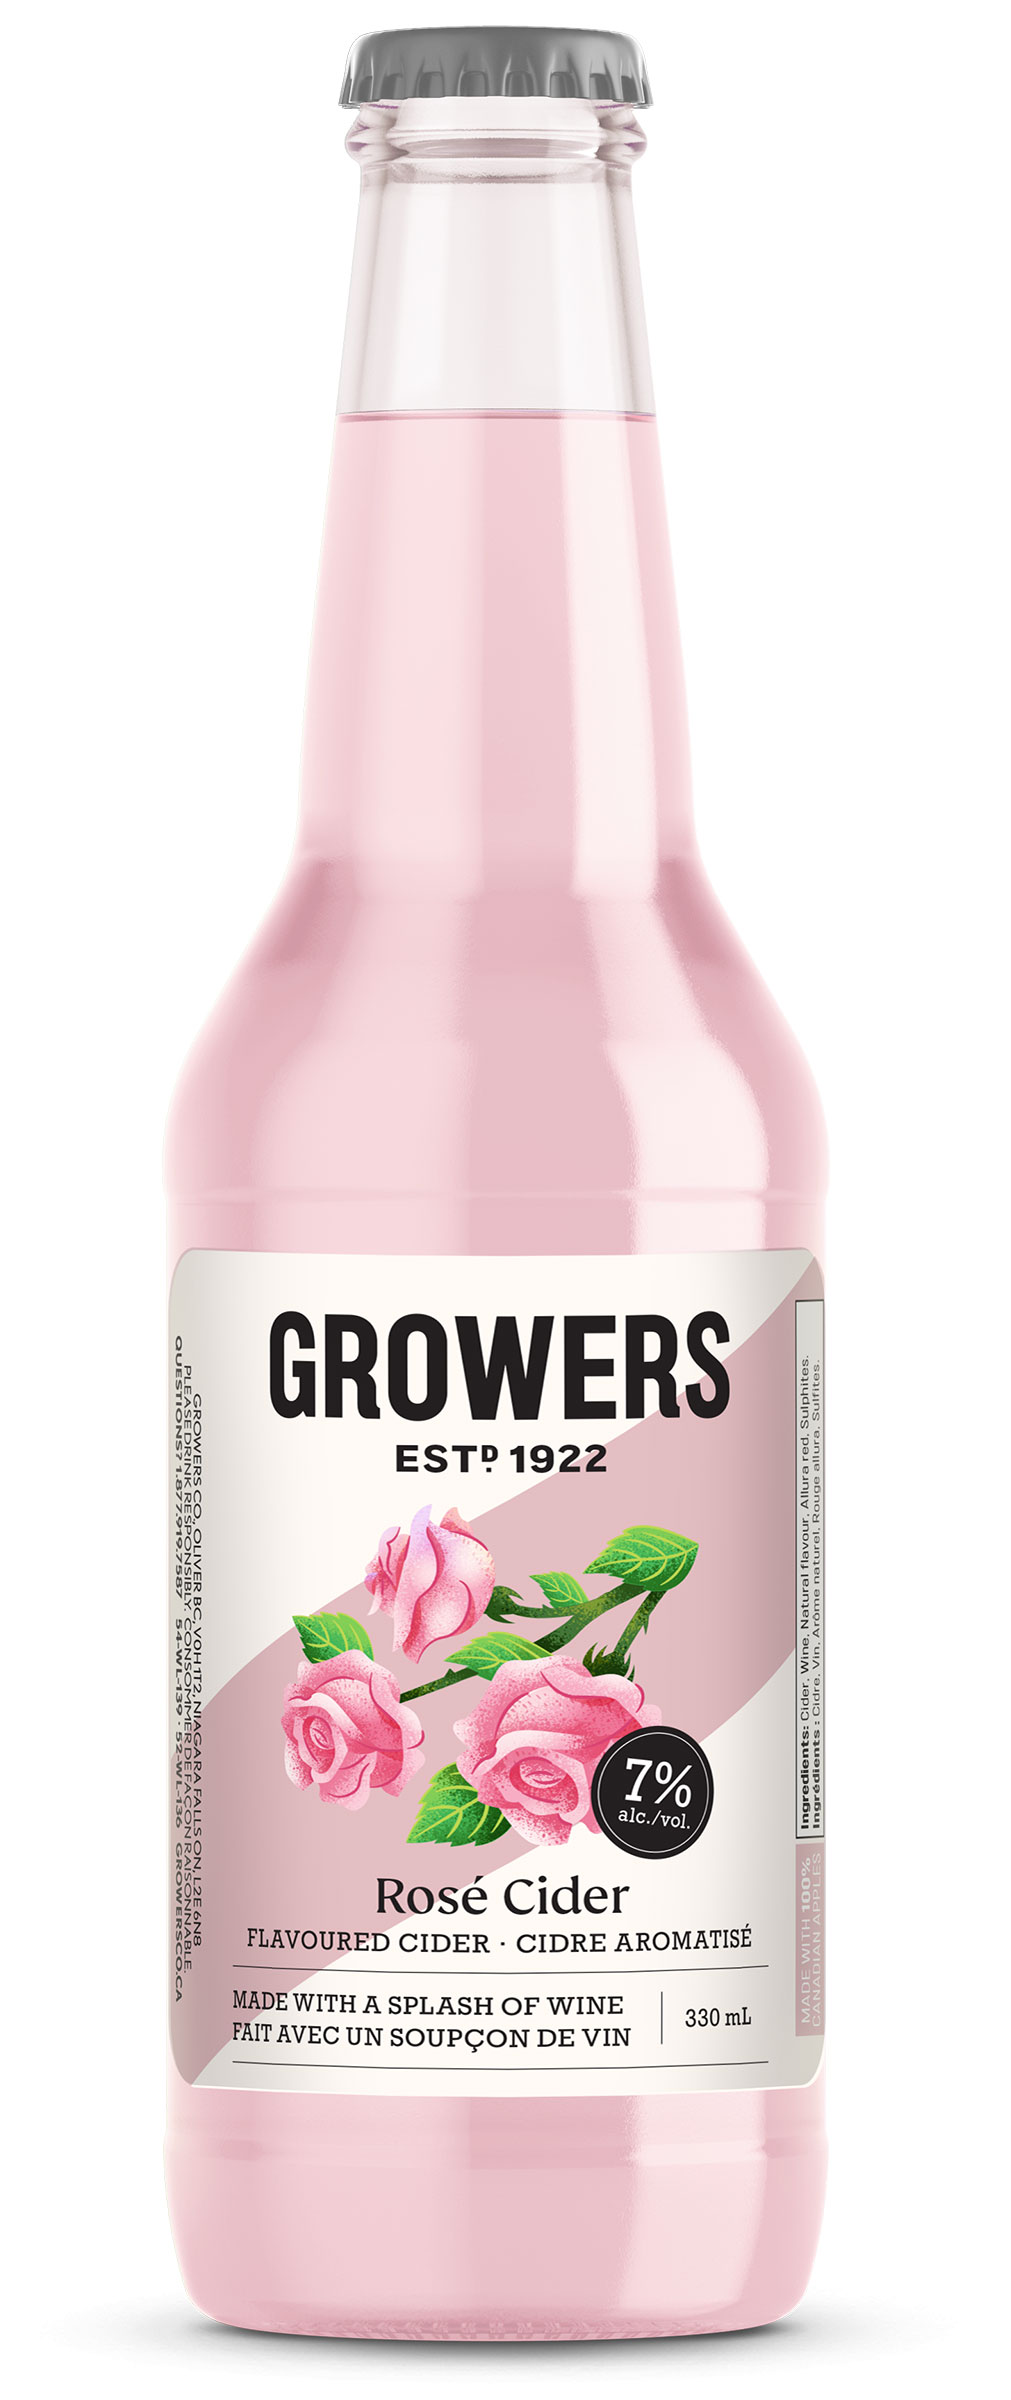 Bottle of Growers Rose Cider